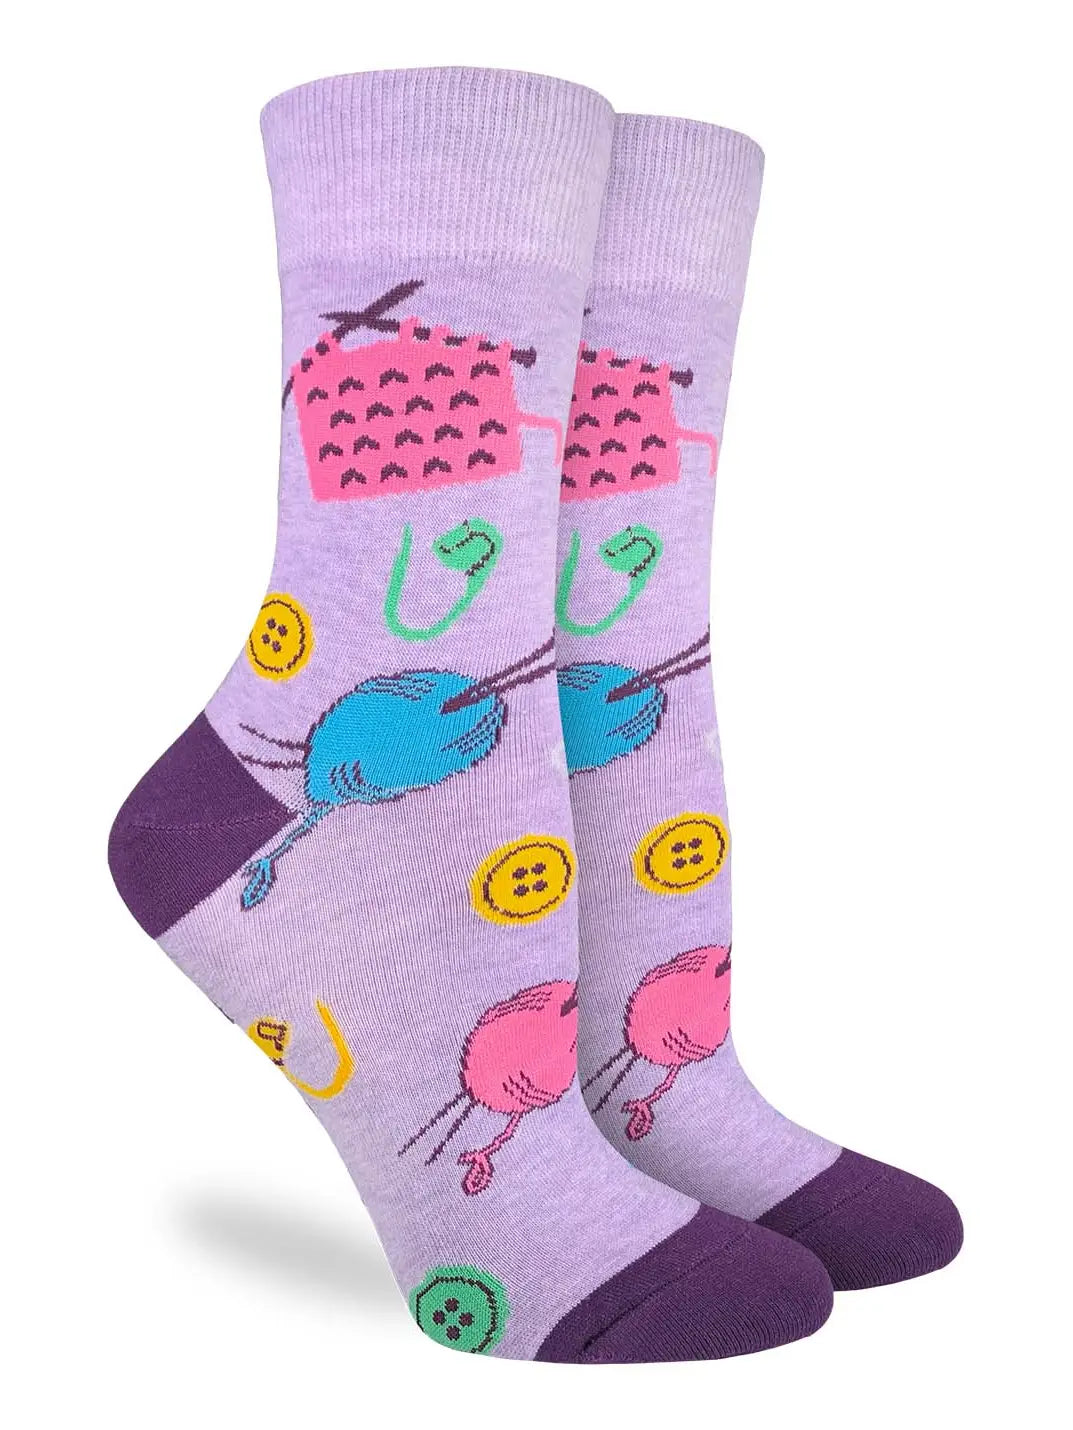 Good Luck Sock - Women's Knitting Socks